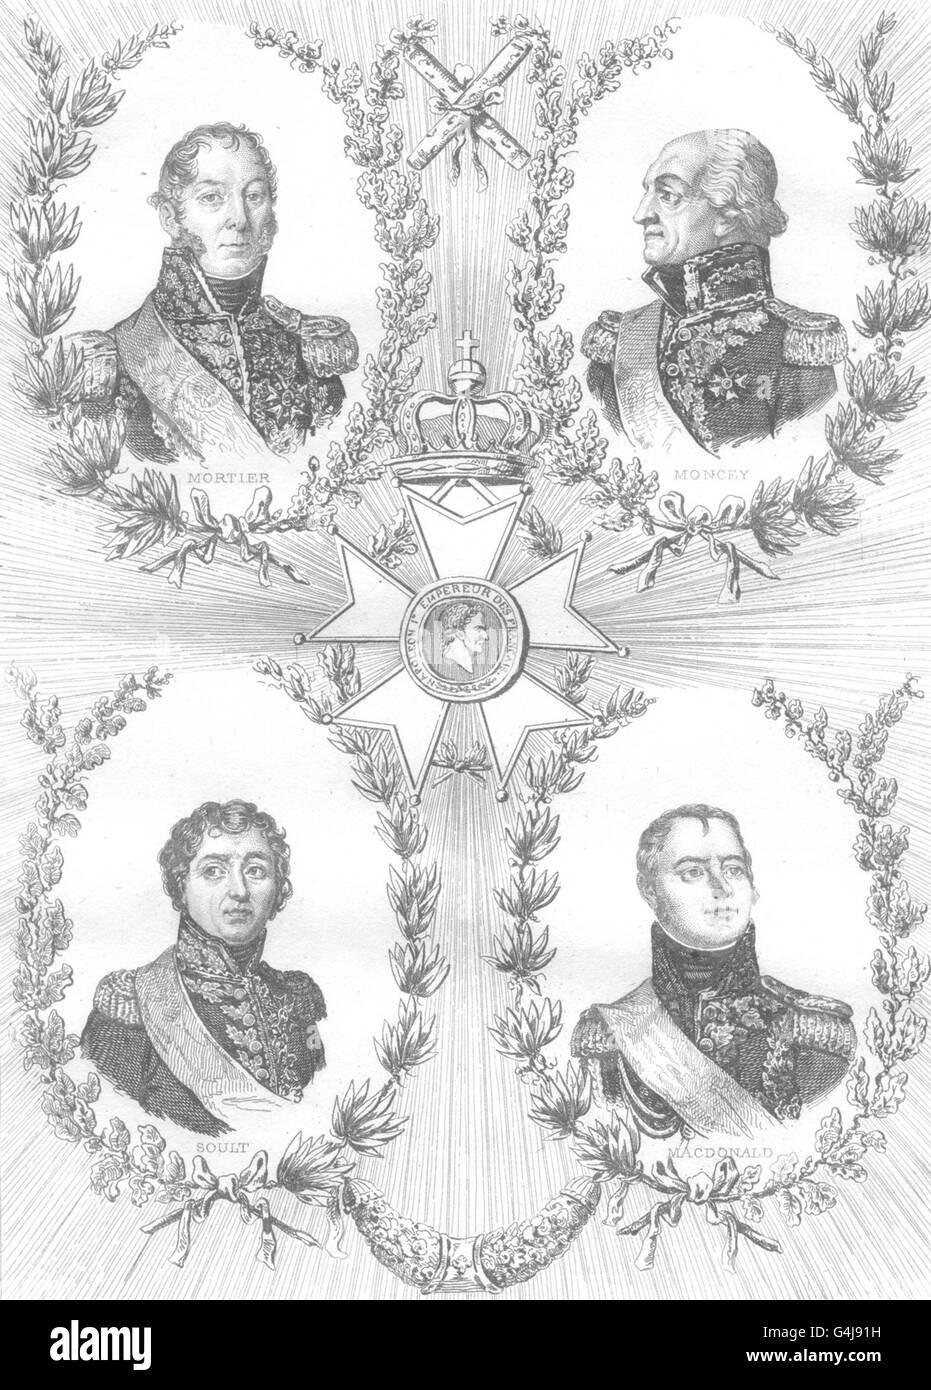 FRANCE: Mortier; Moncey; Soult; Macdonald, antique print 1835 Stock Photo